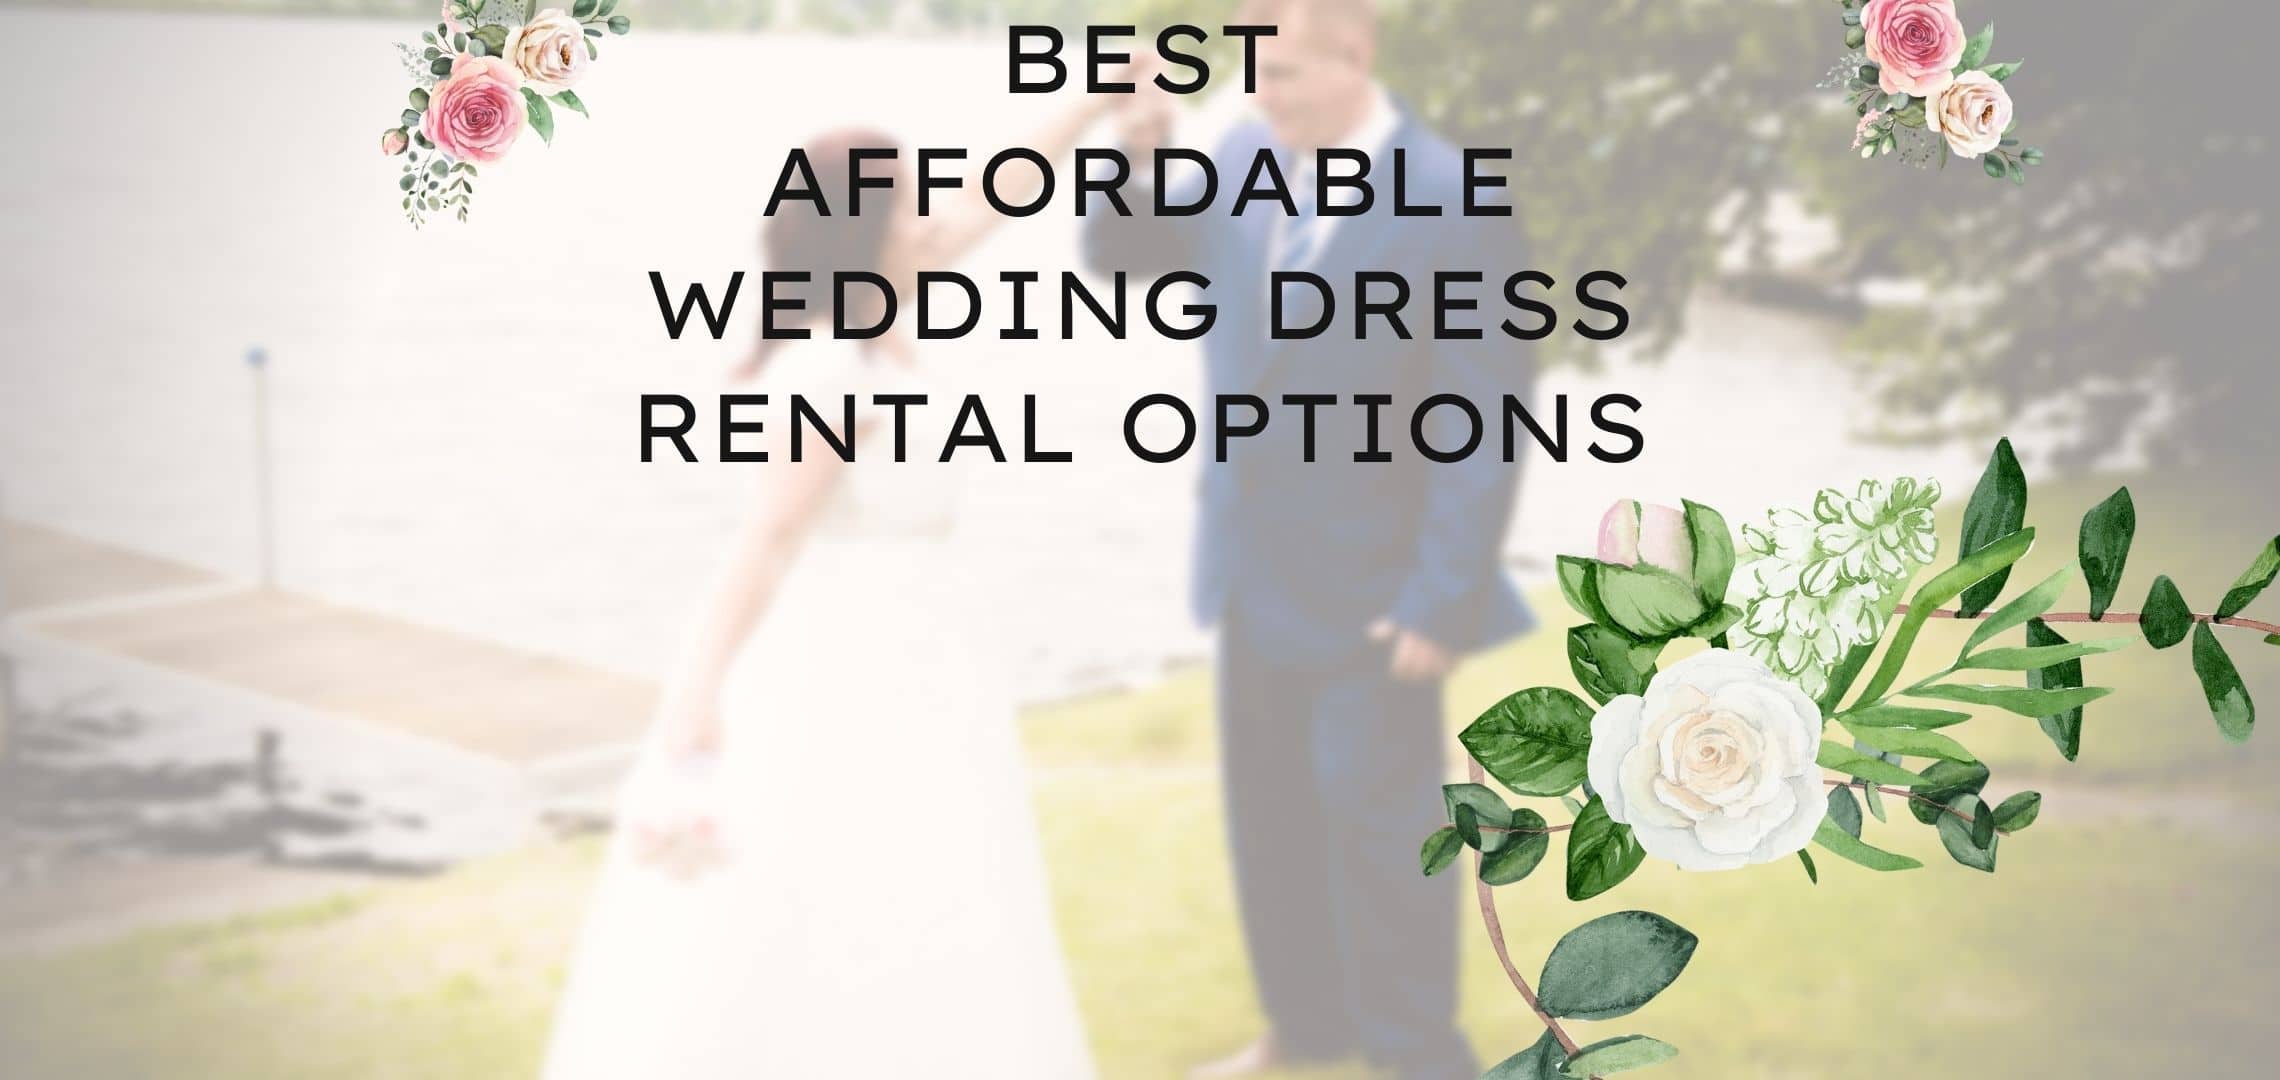 Best Affordable Wedding Dress Rental Options